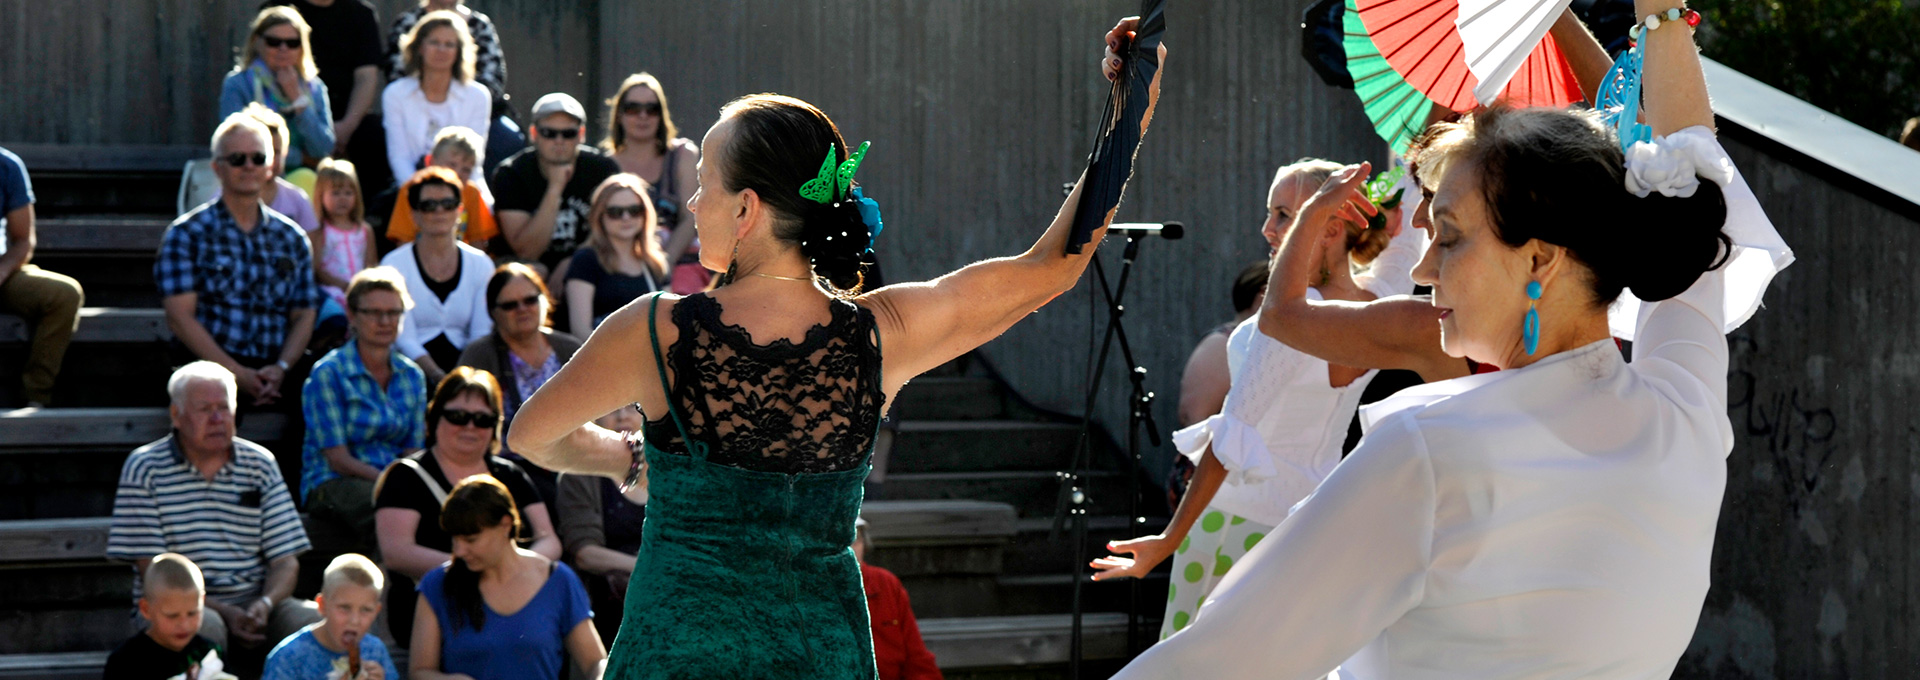 Flamenco-tanssiesitys Kouvolatalon ulkonäyttämöllä.